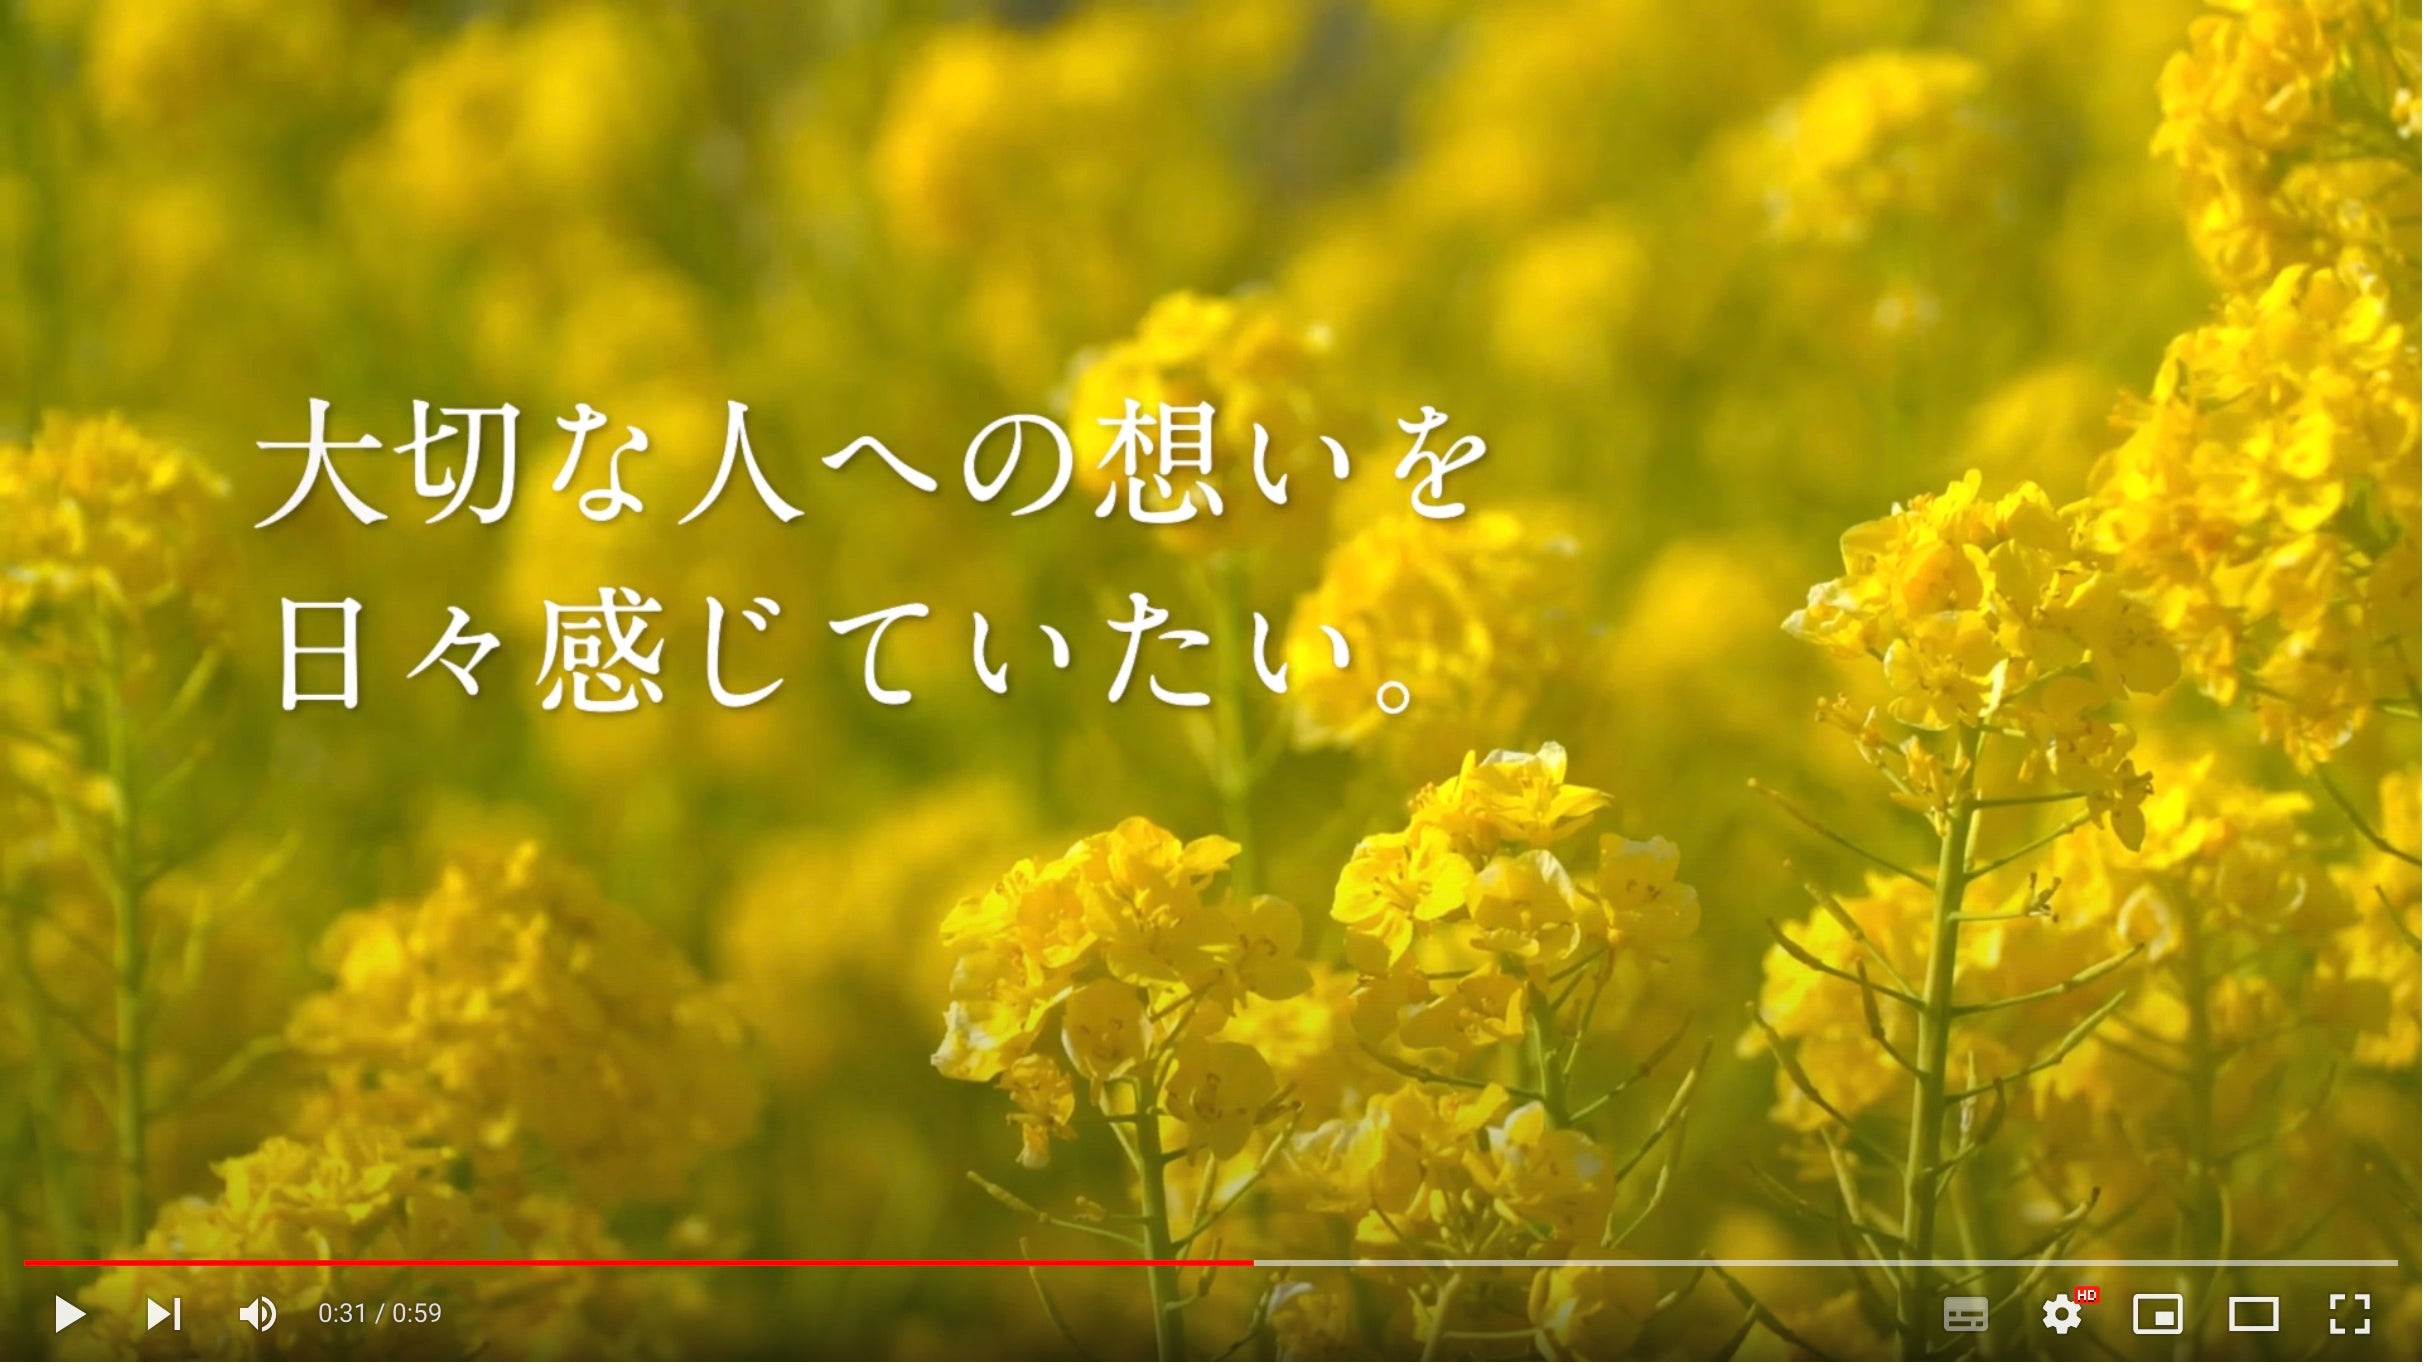 動画を読み込む: おしゃれで自由なお仏壇、HITOTANAの紹介動画